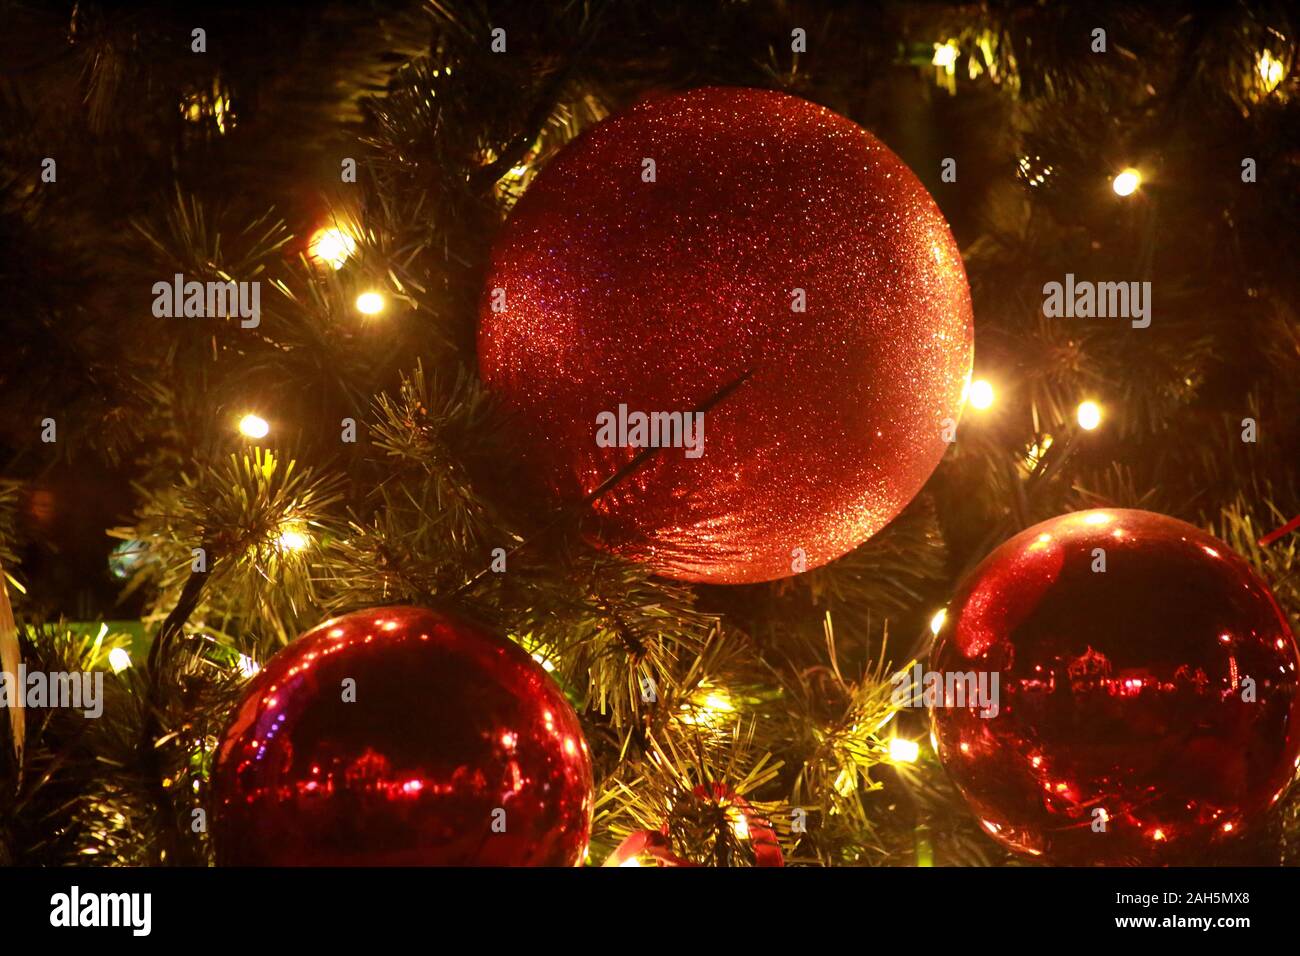 Traditionell dekorierte Christbaumkugeln hängt an grüne Zweige Baum der Kiefer. Leuchtend rote Kugeln am Weihnachtsbaum Tanne oder mit string Reis Glühlampen Fichte. Stockfoto